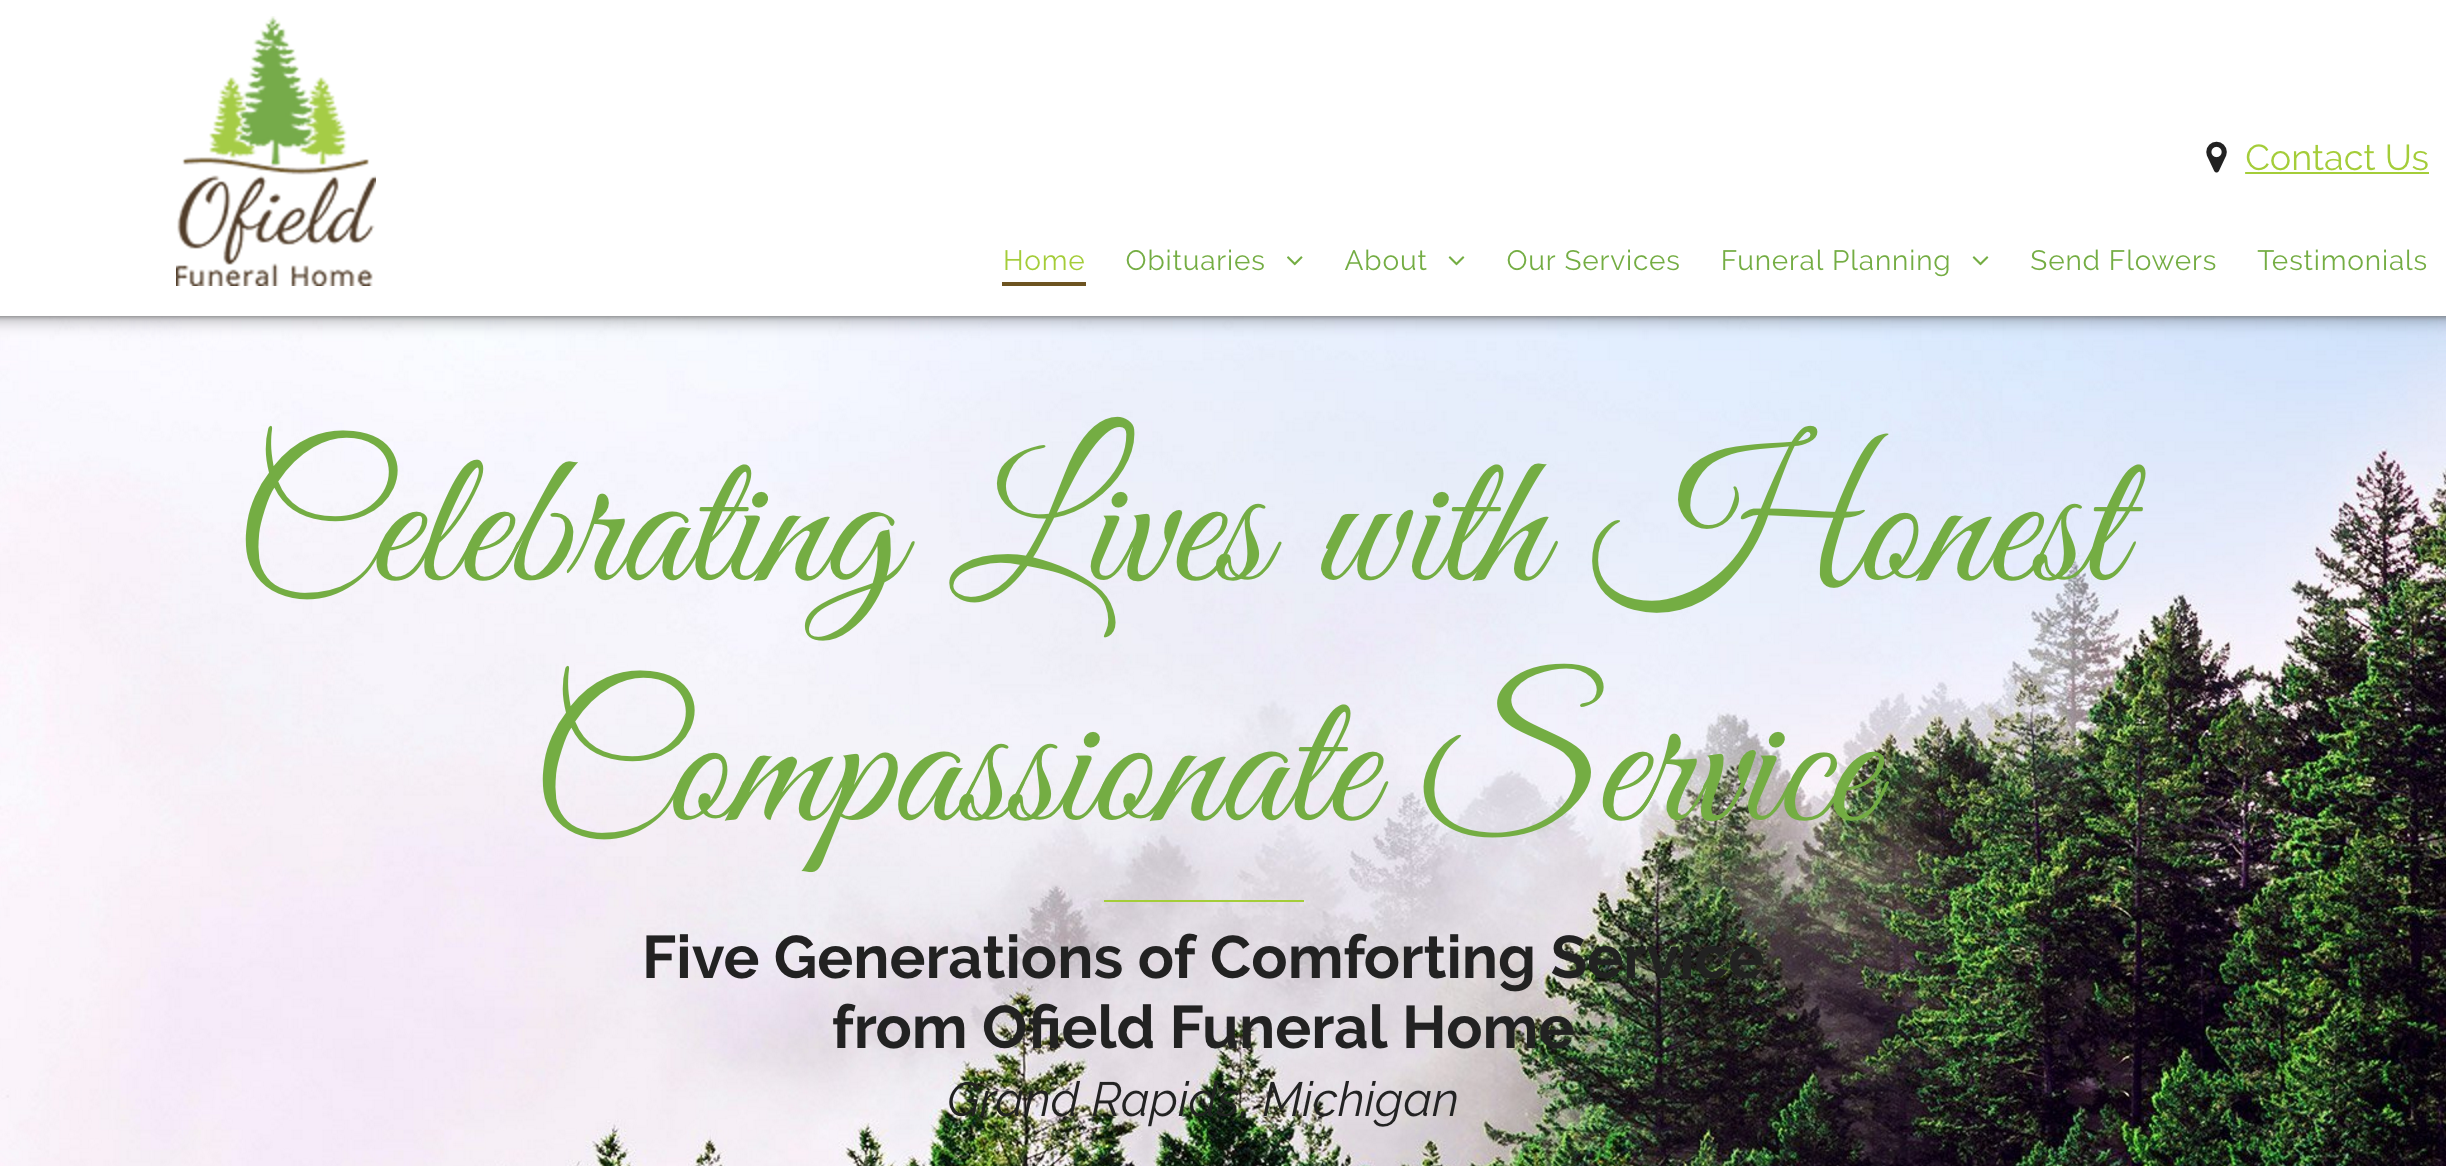 Ofield Funeral Home - Grand Rapids, MI.